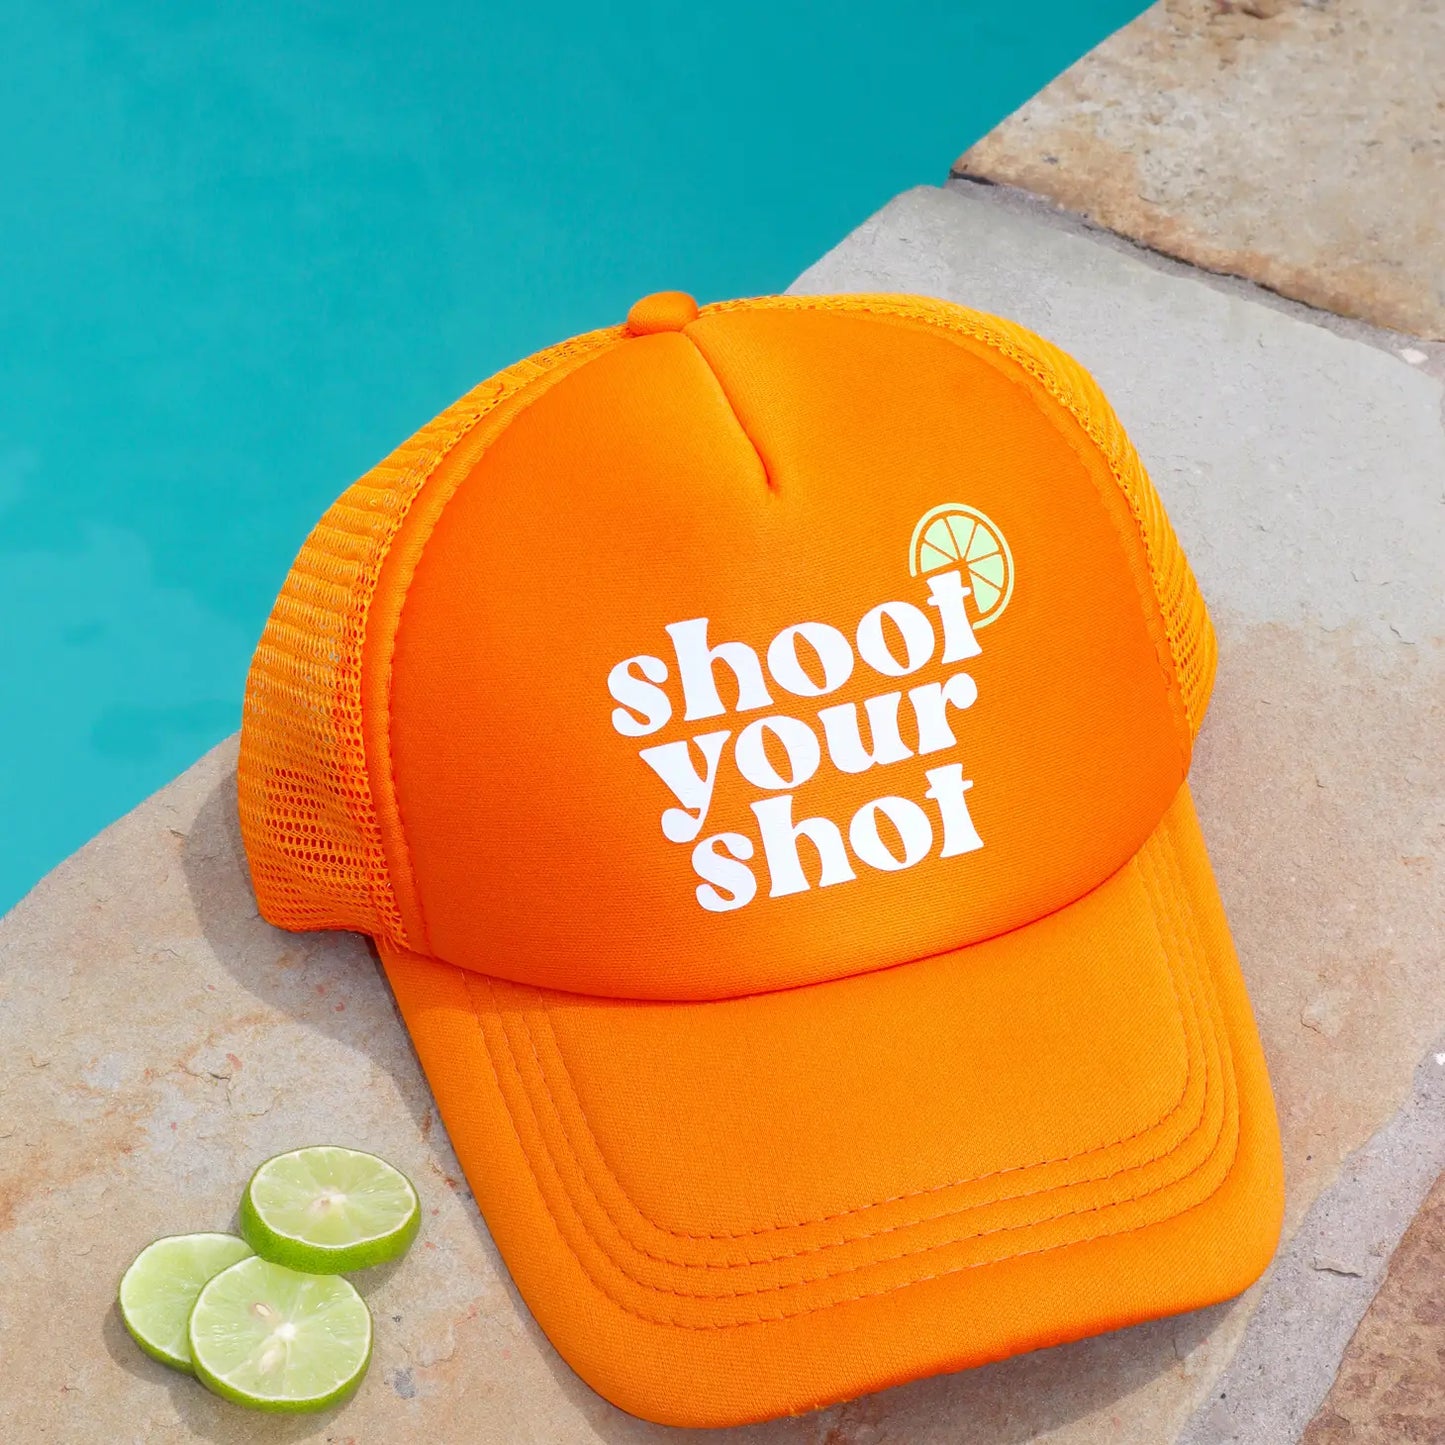 Shoot Your Shot Trucker Hat